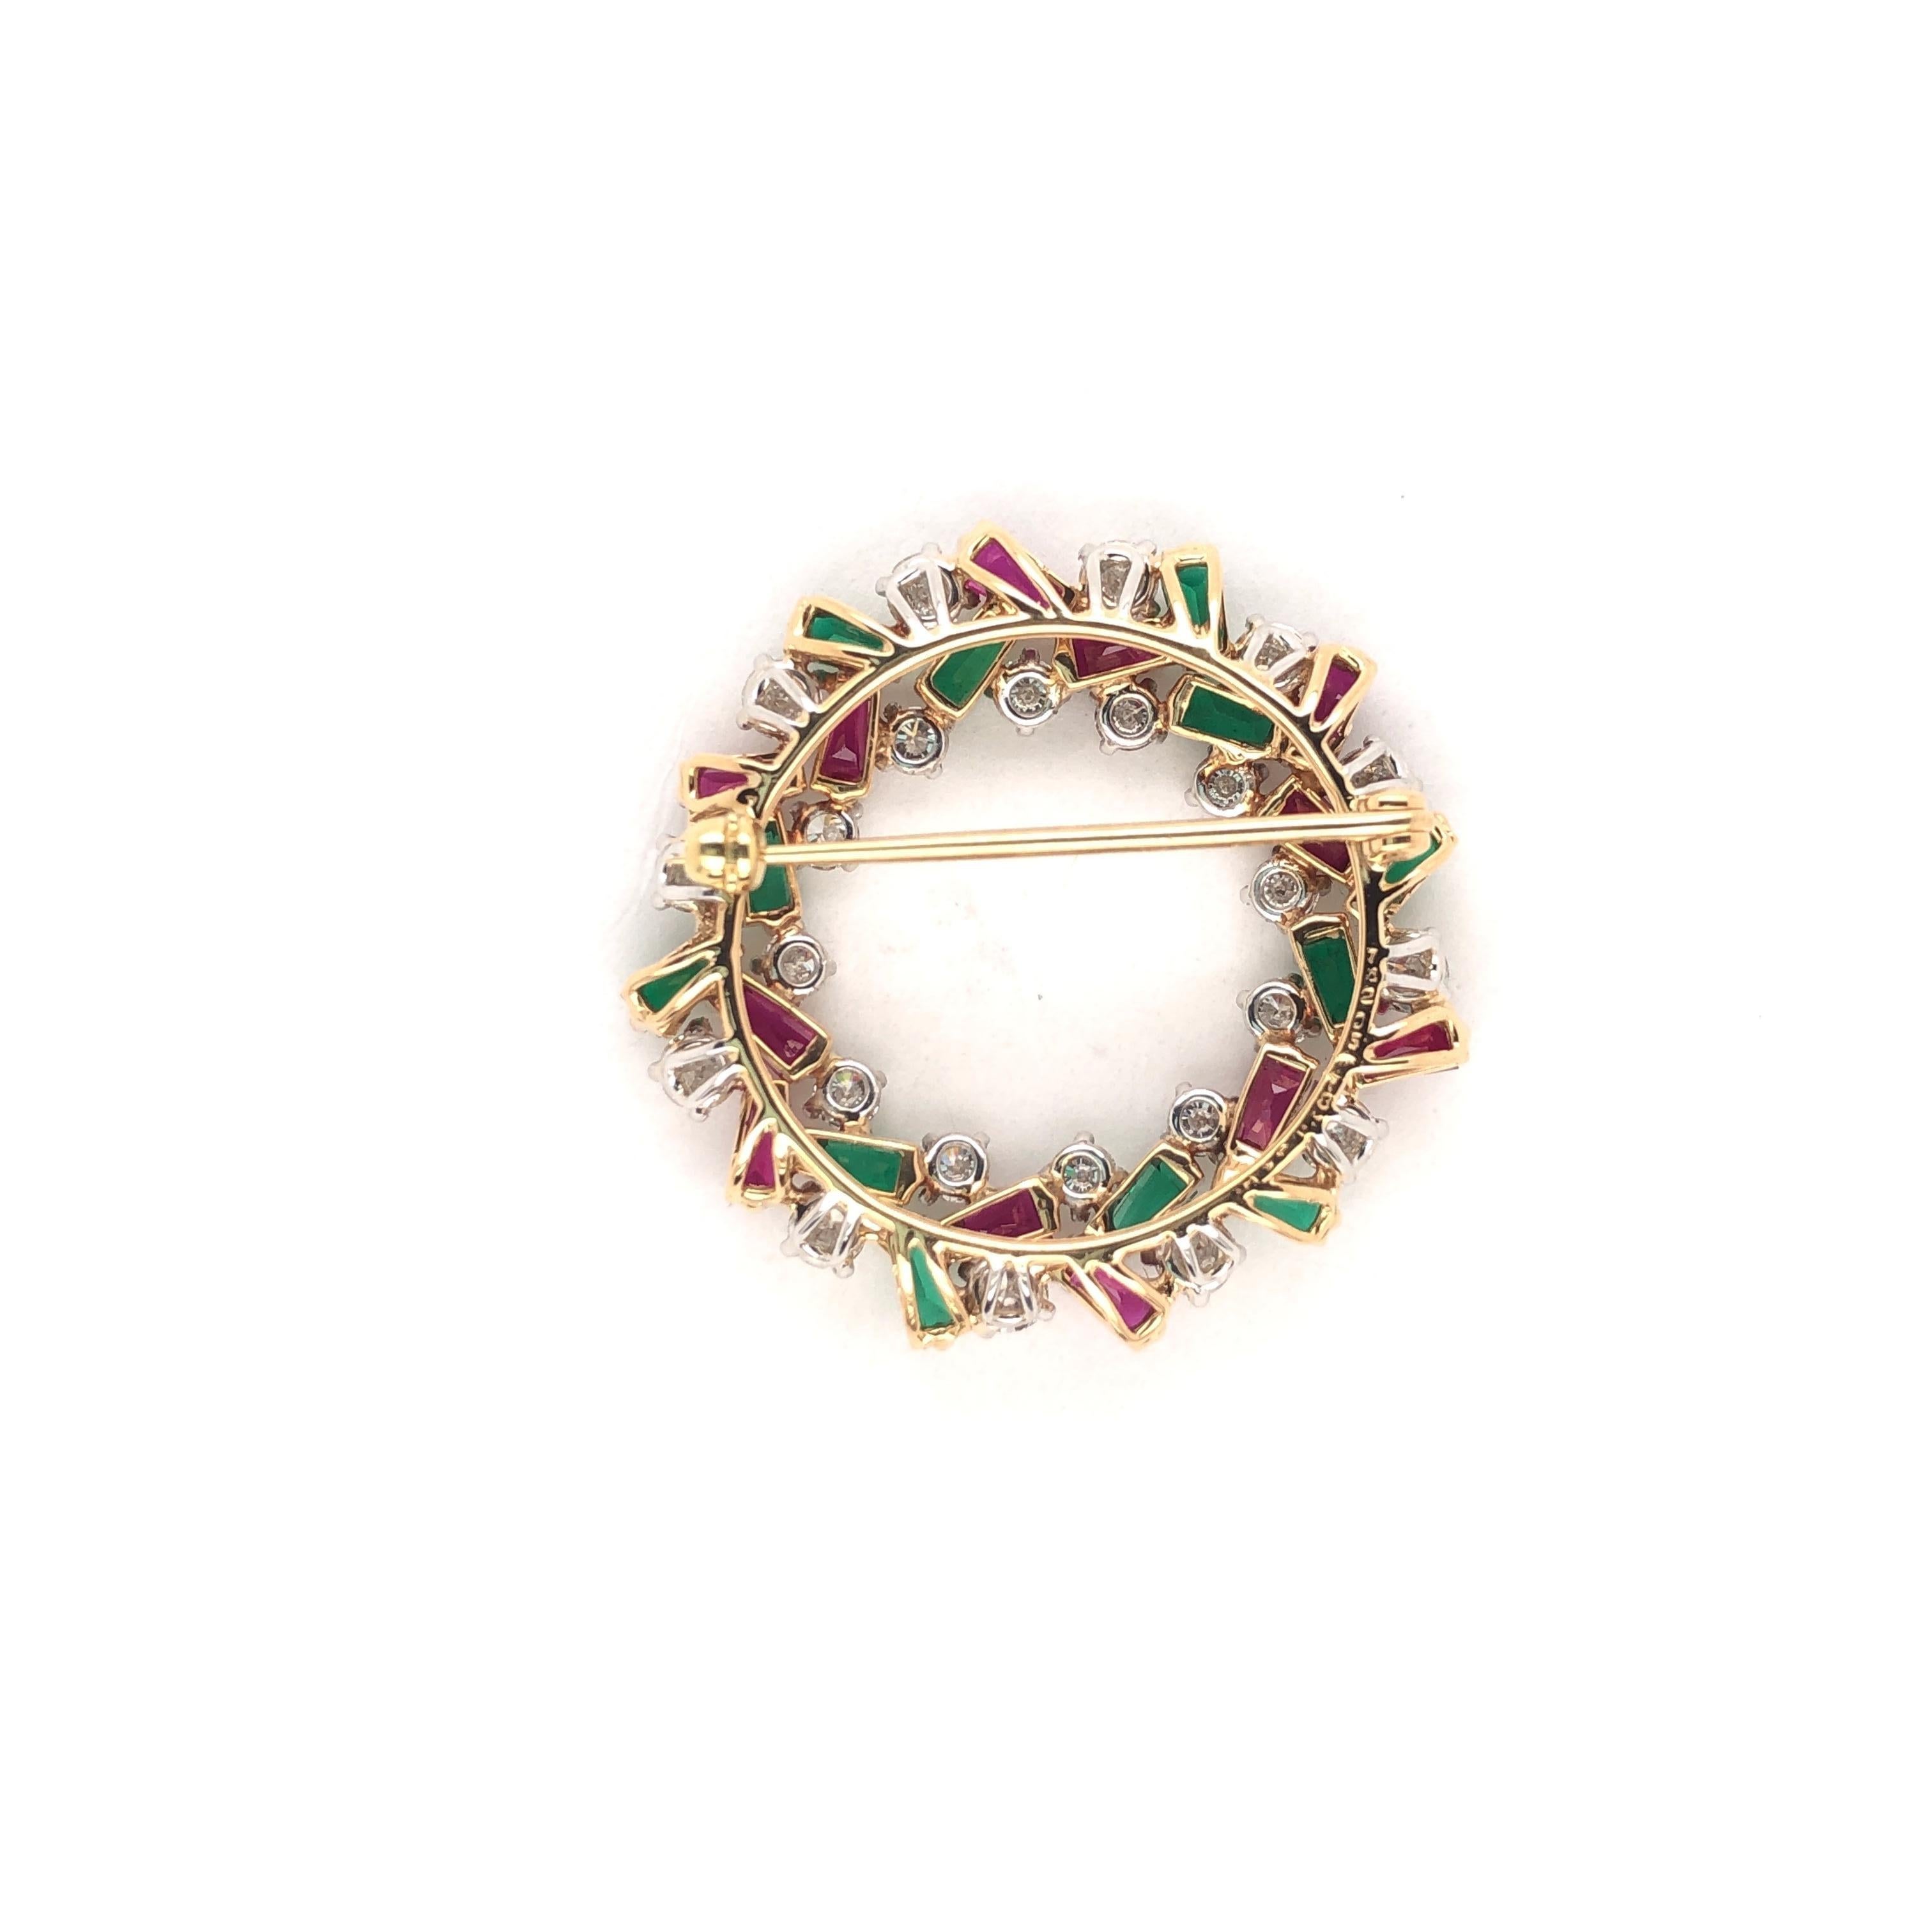 Emerald Cut Oscar Heyman Holiday Wreath Brooch with Rubies, Emeralds and Diamonds